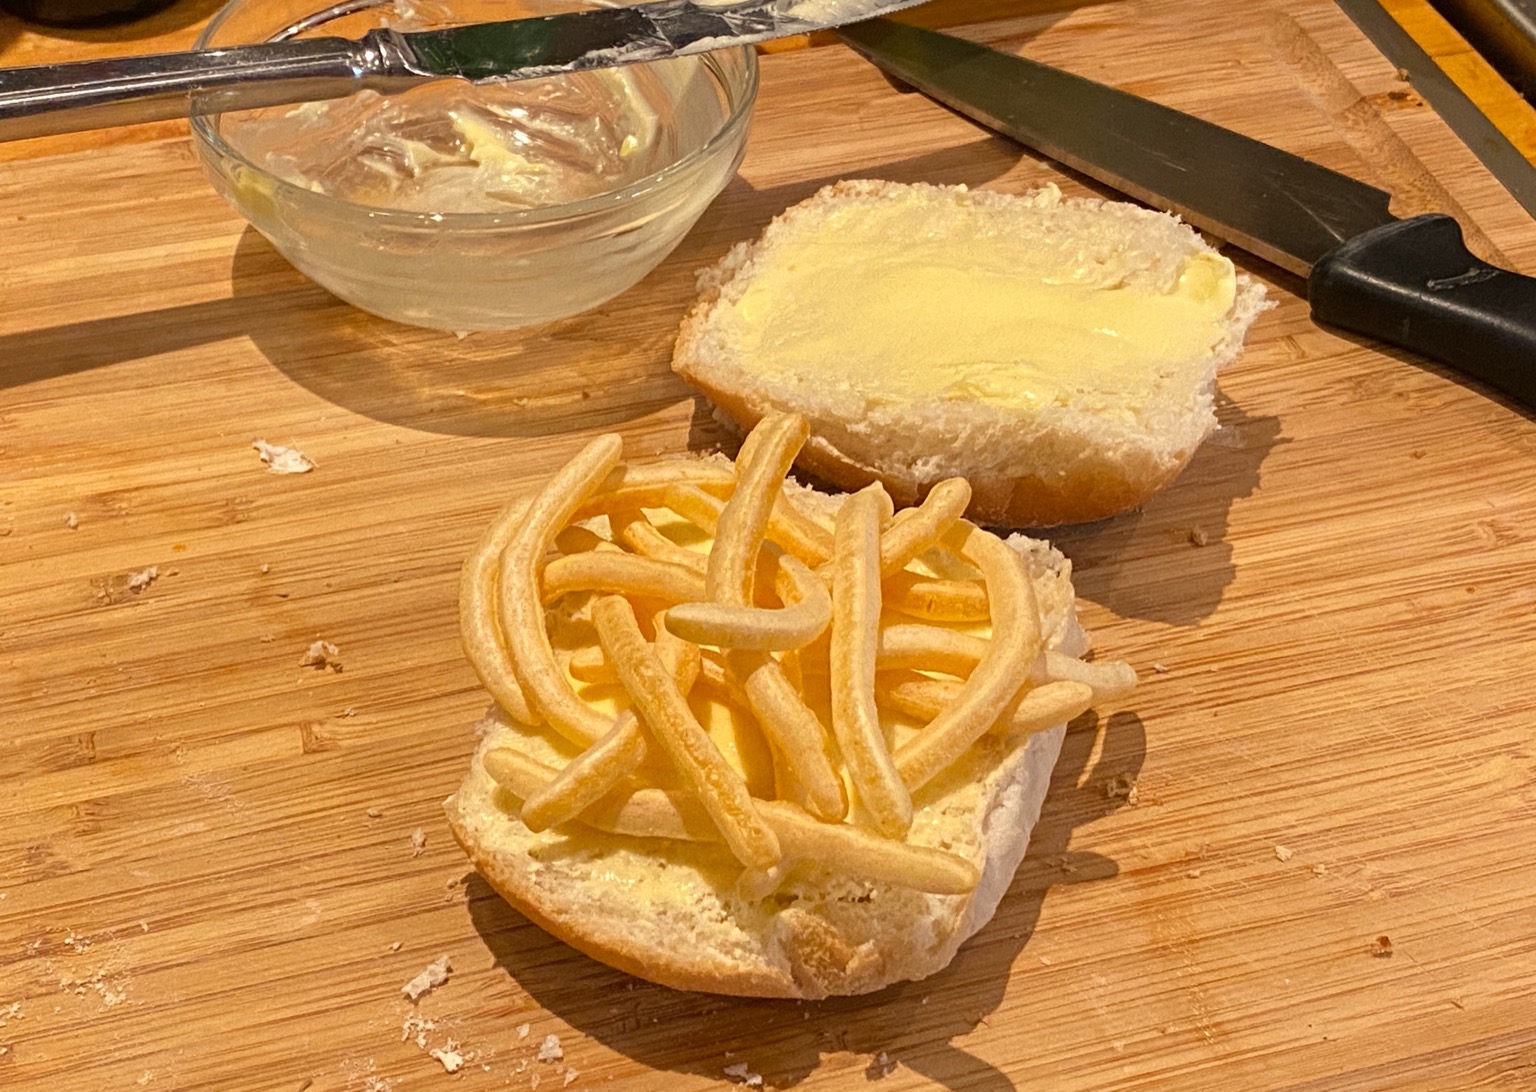 French Fries snacks on bread roll alongside knife